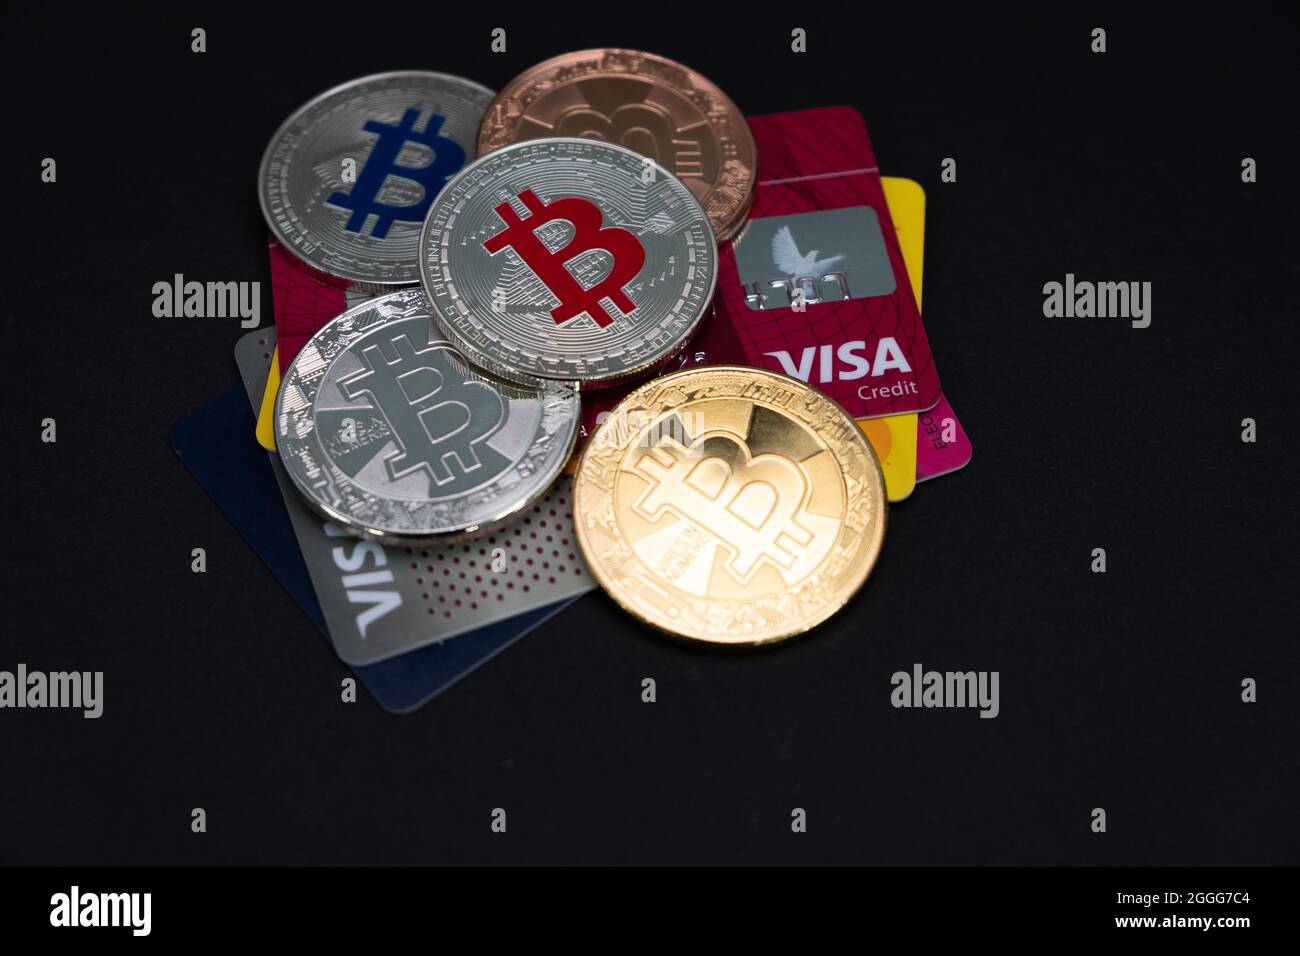 Plusieurs pièces de monnaie en Bitcoin brillantes, avec CARTES DE débit et de crédit VISA sur un fond sombre. Monnaie virtuelle électronique BTC. Banque D'Images